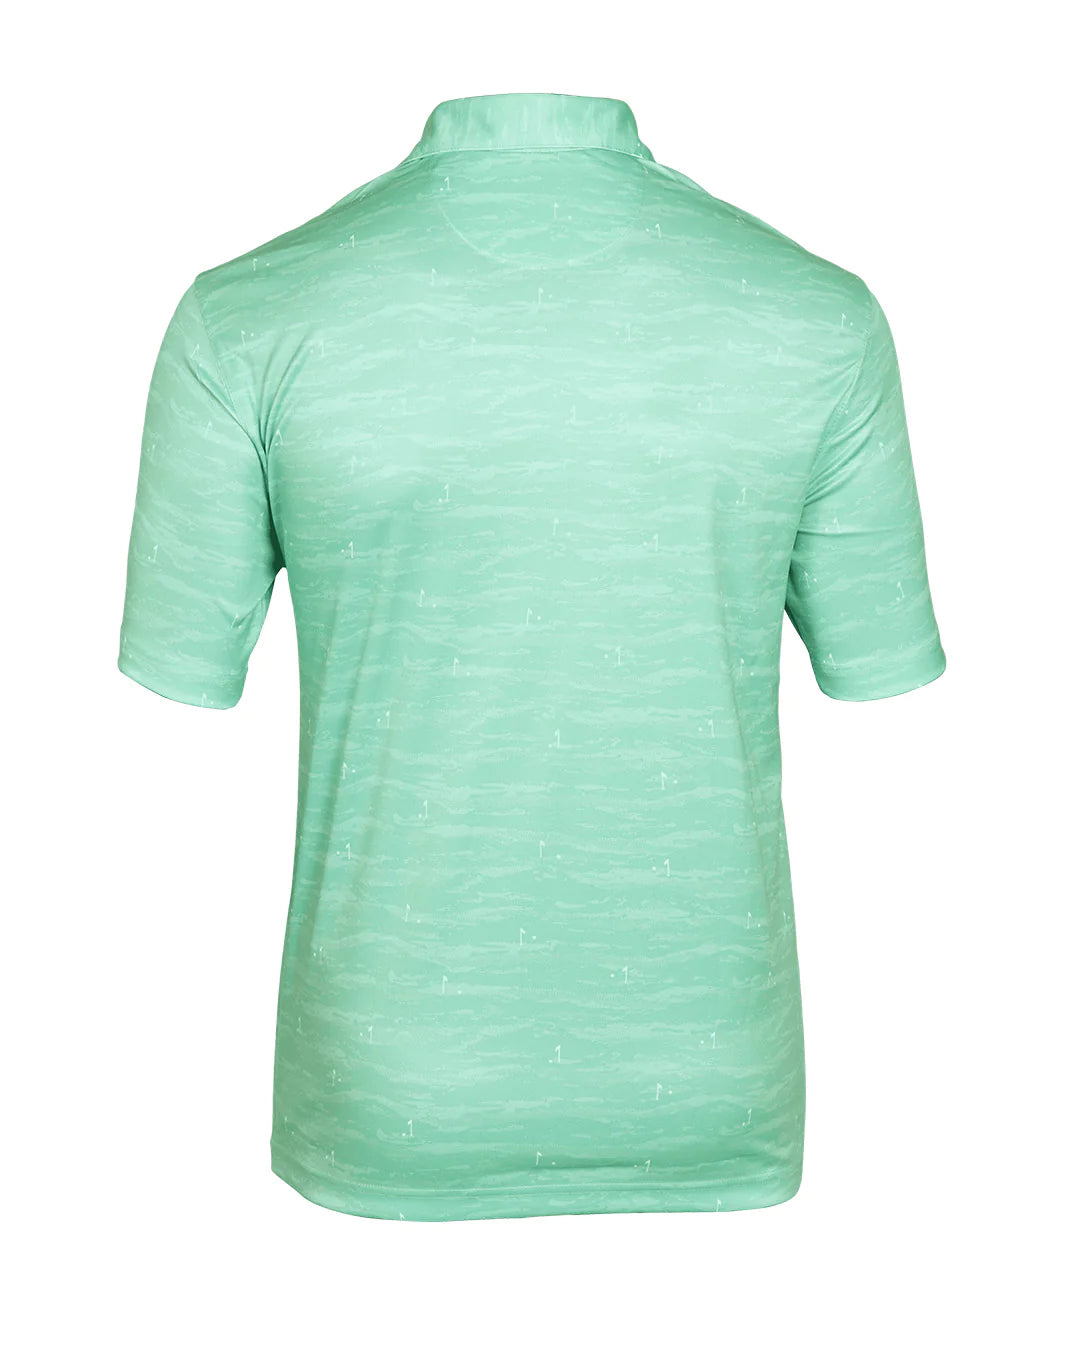 GREG NORMAN Lime Meadow Print Golf Polo T Shirt